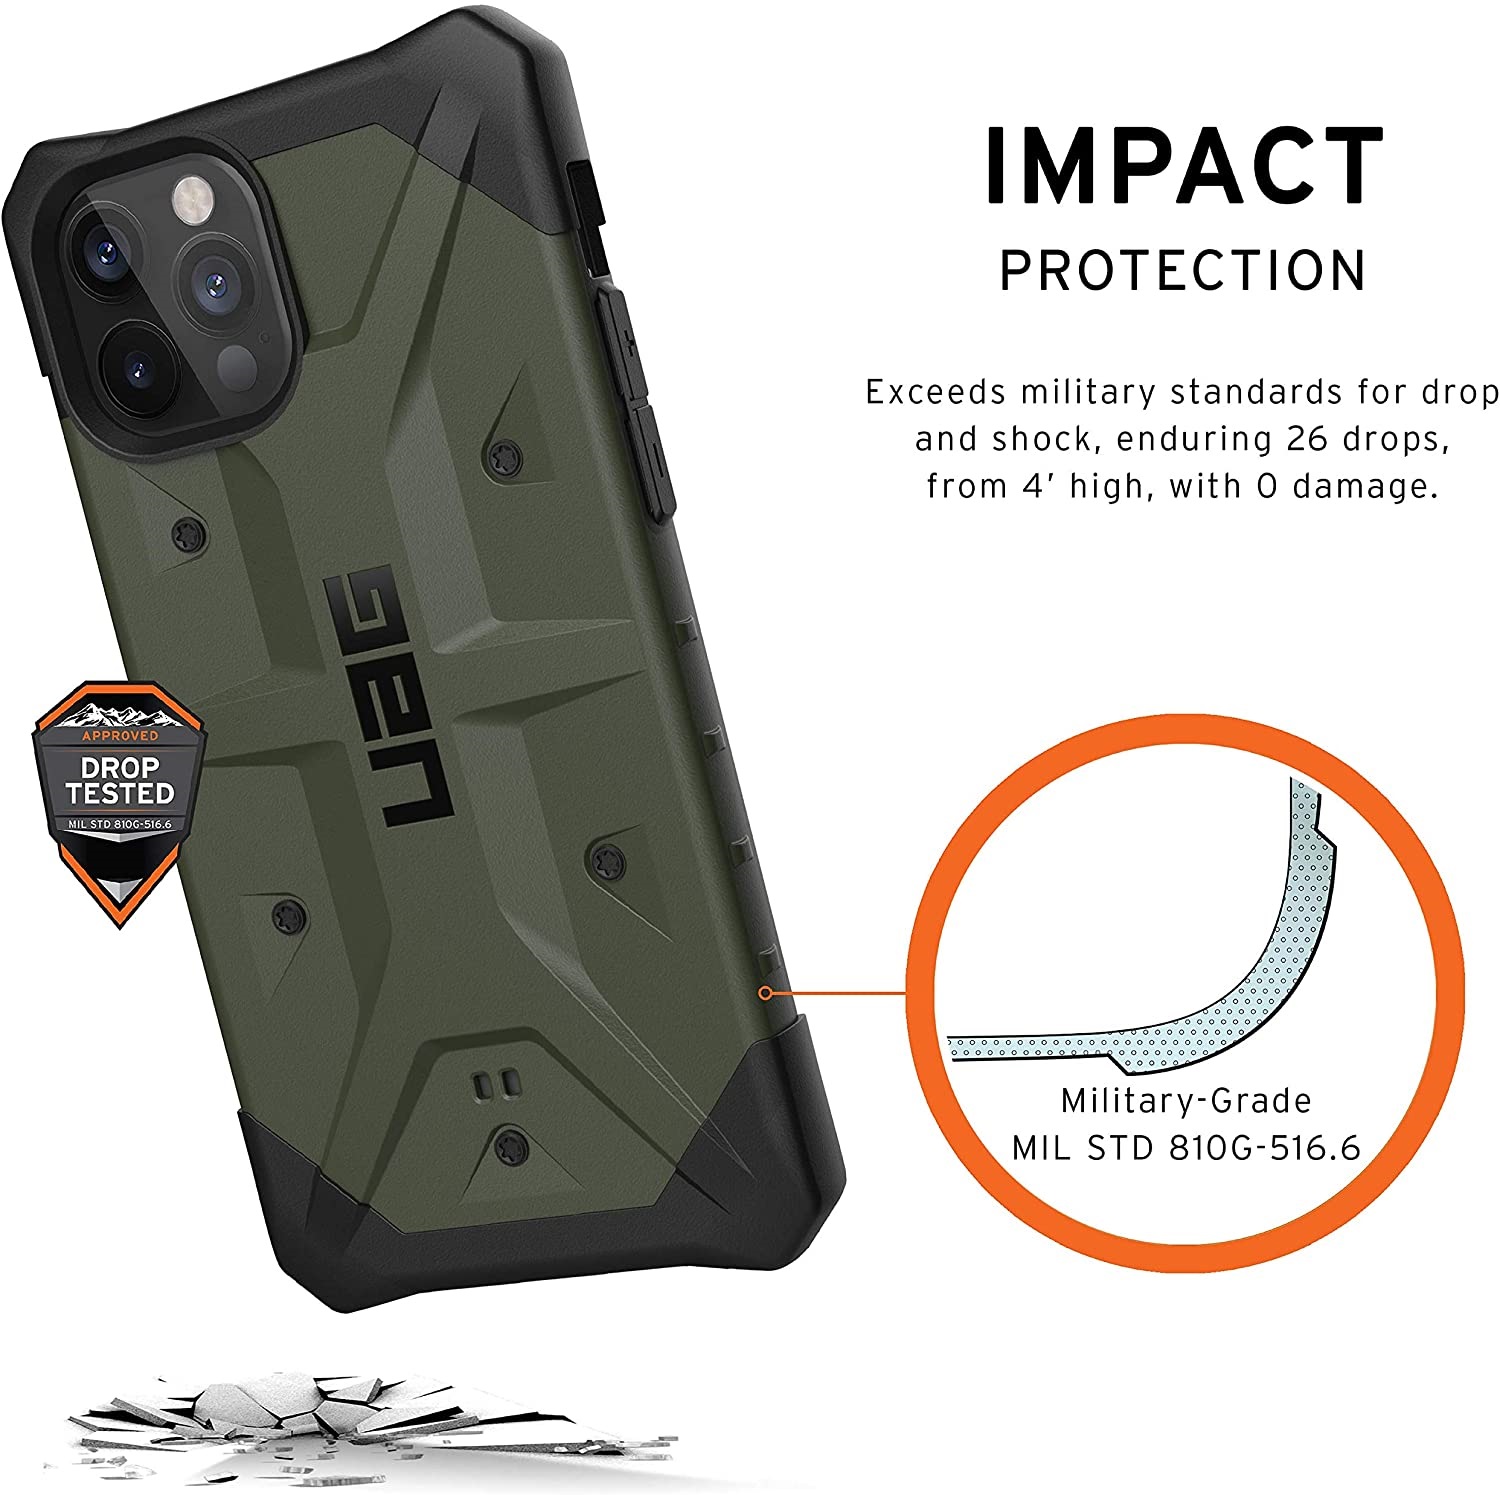 Противоударный защитный чехол UAG Pathfinder Series Case Olive для iPhone 12/12 Pro